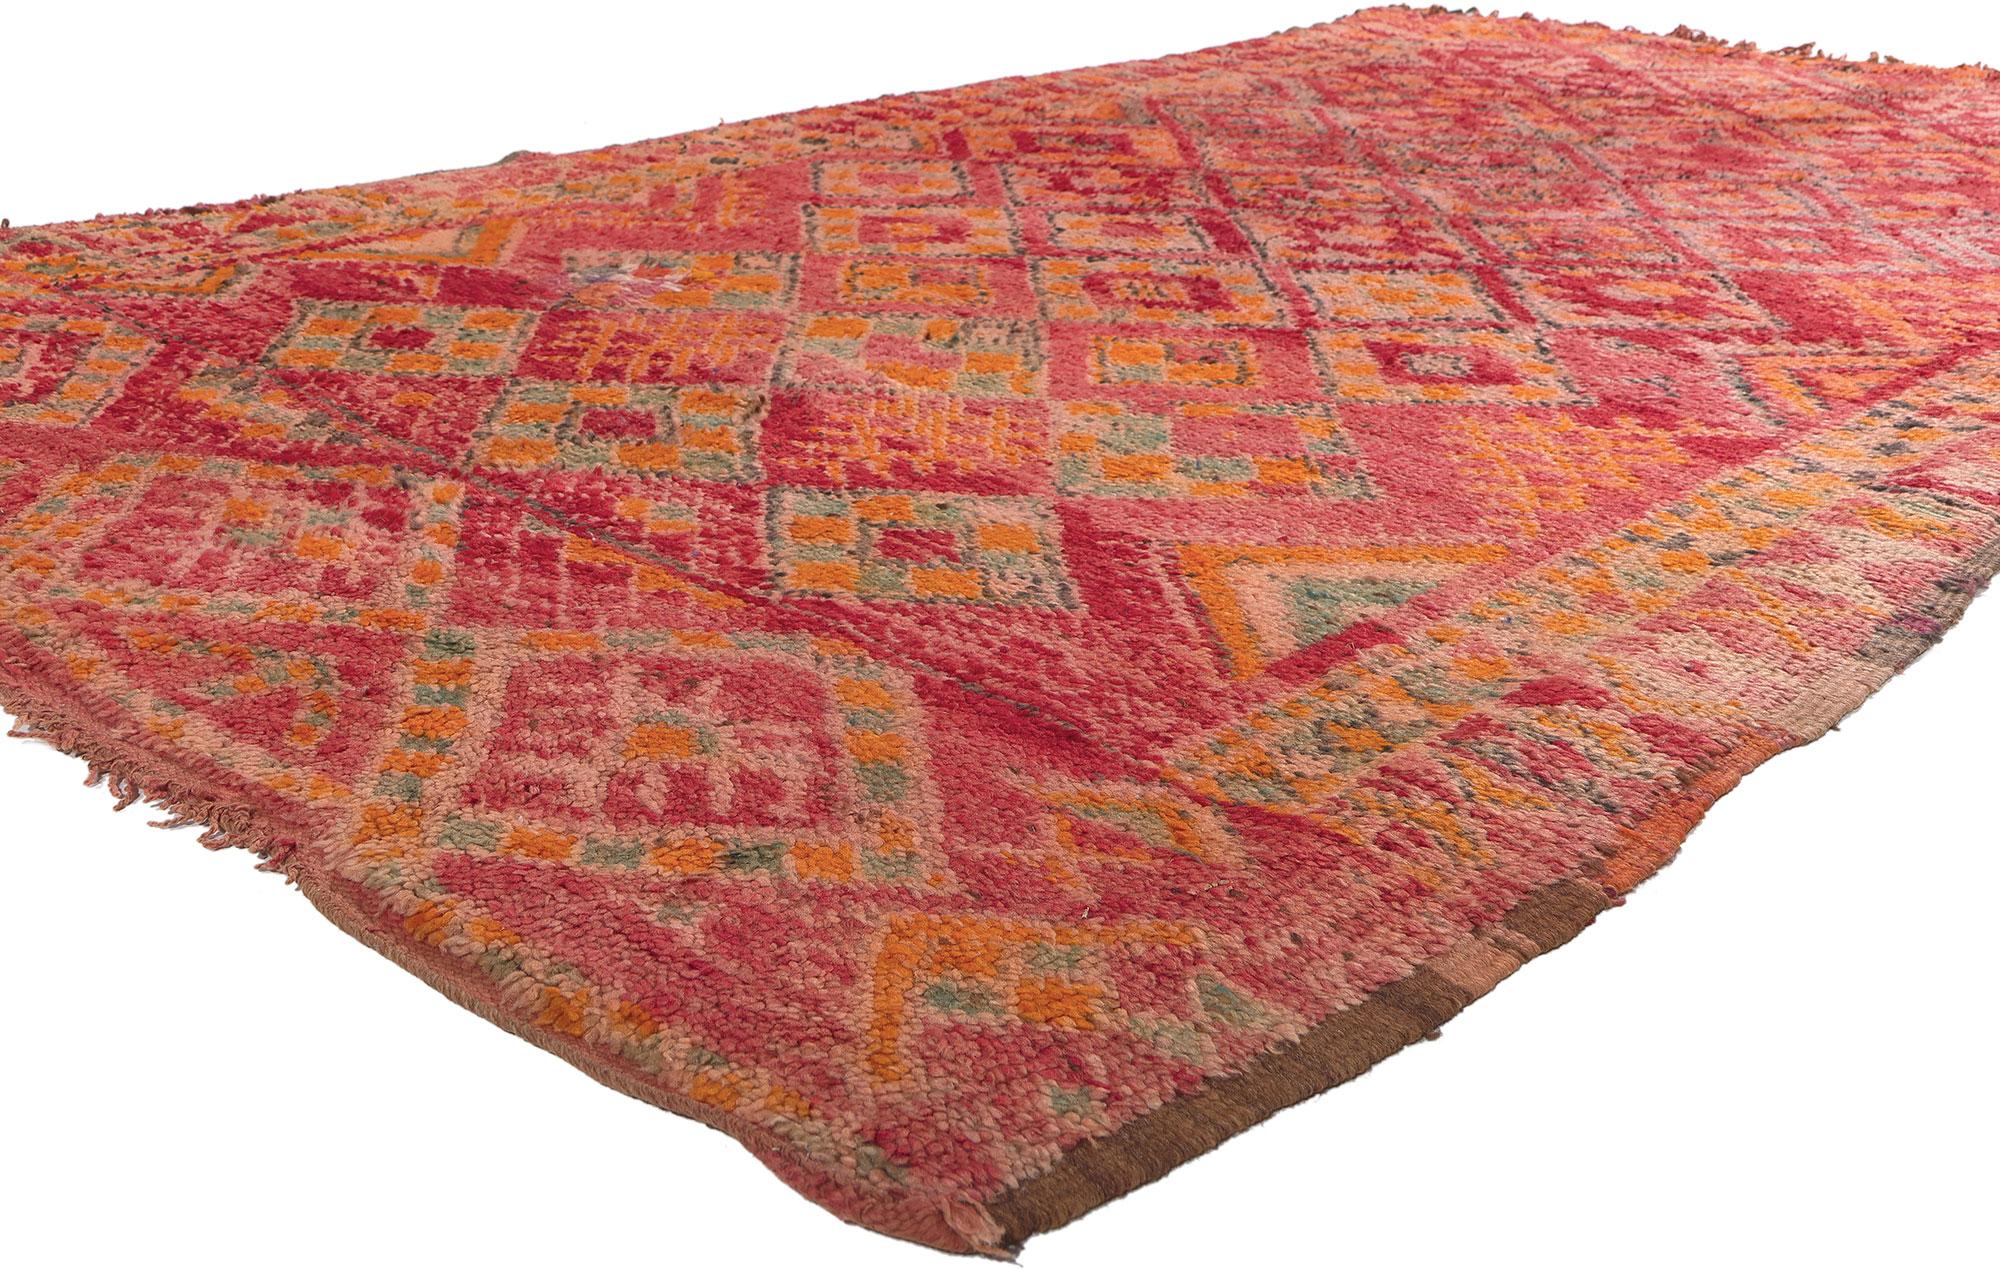 20677 Tapis marocain Vintage Red Talsint, 05'09 x 09'07. Plongez dans l'art exquis de ce tapis marocain Talsint vintage en laine noué à la main, originaire de la région de Figuig dans le nord-est du Maroc, également connue sous le nom d'Aït Bou